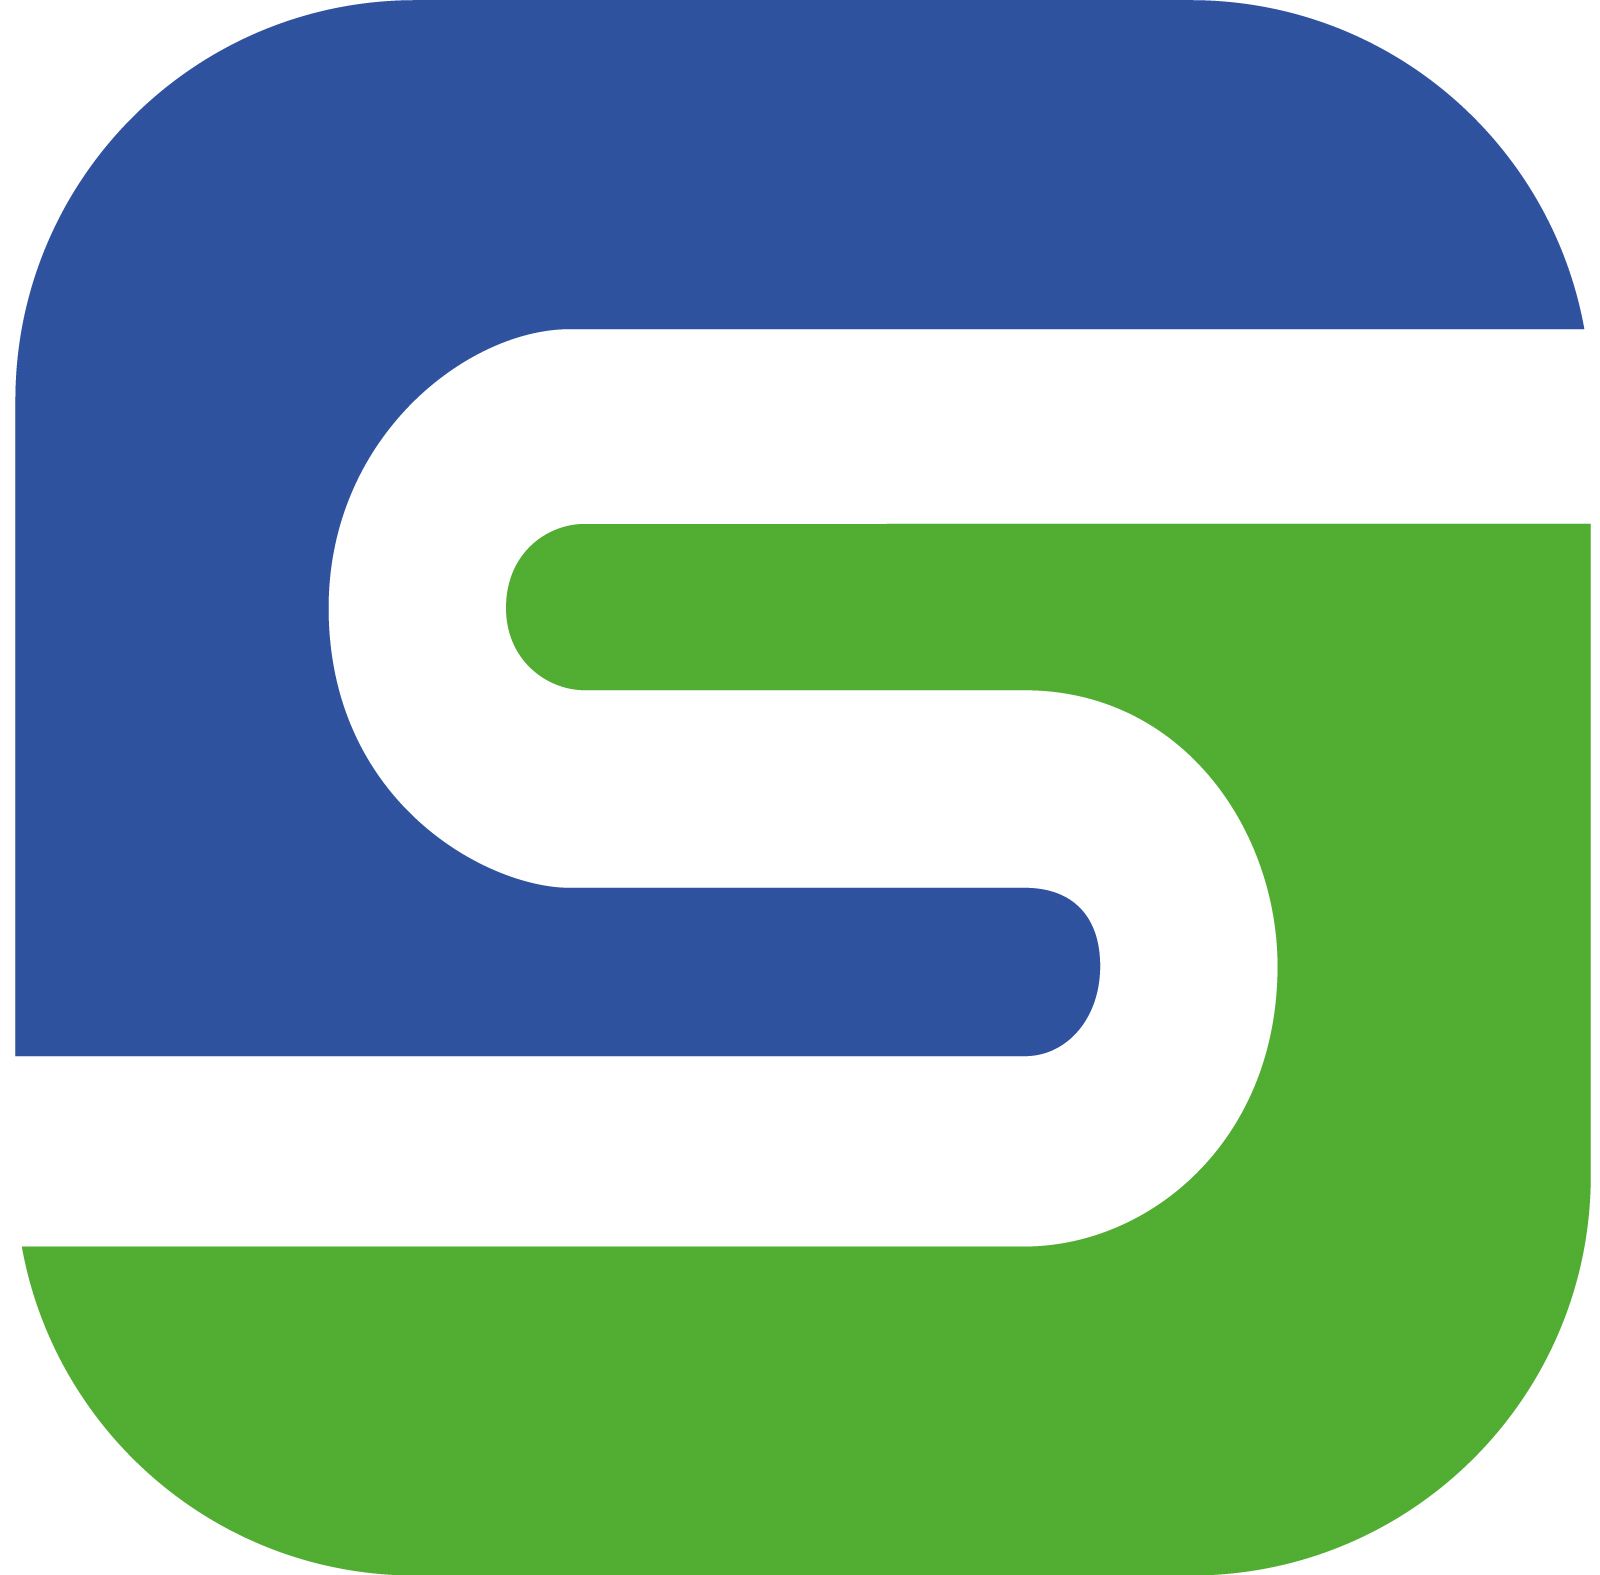 Công ty cổ phần SmartOSC